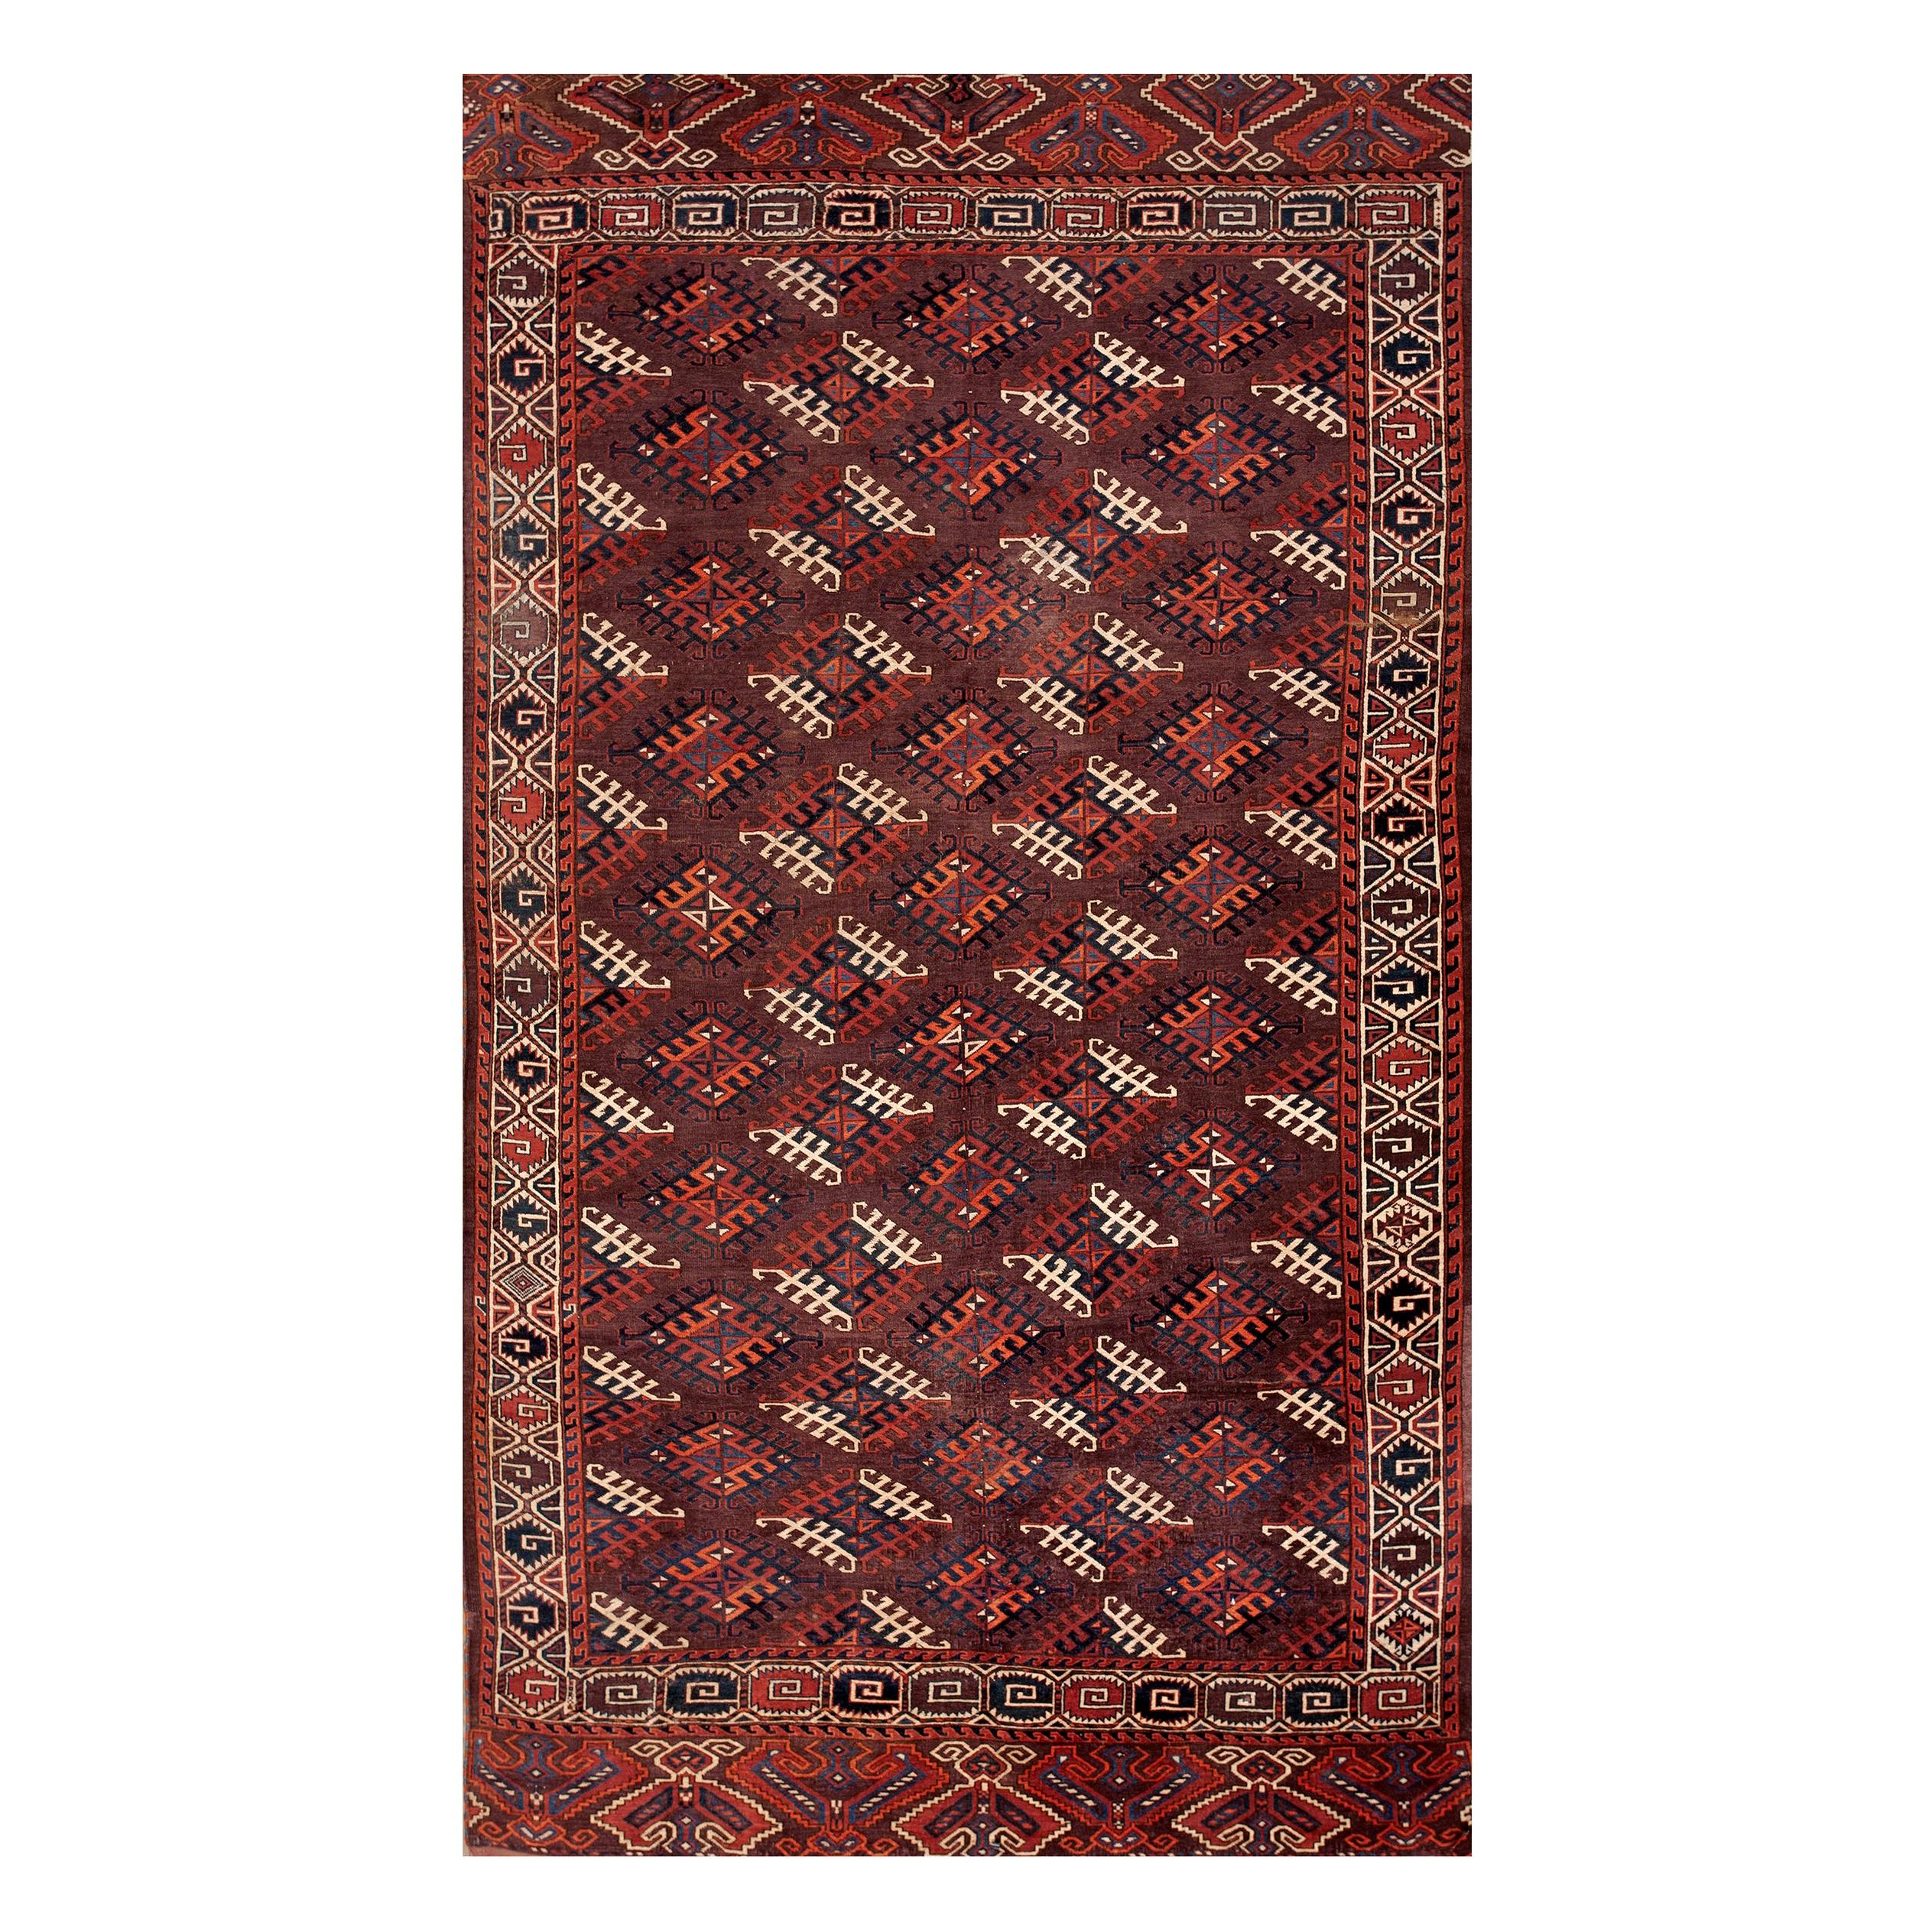 Russischer Yamoud-Turkmen-Teppich aus dem 19. Jahrhundert (190 x 327 cm)